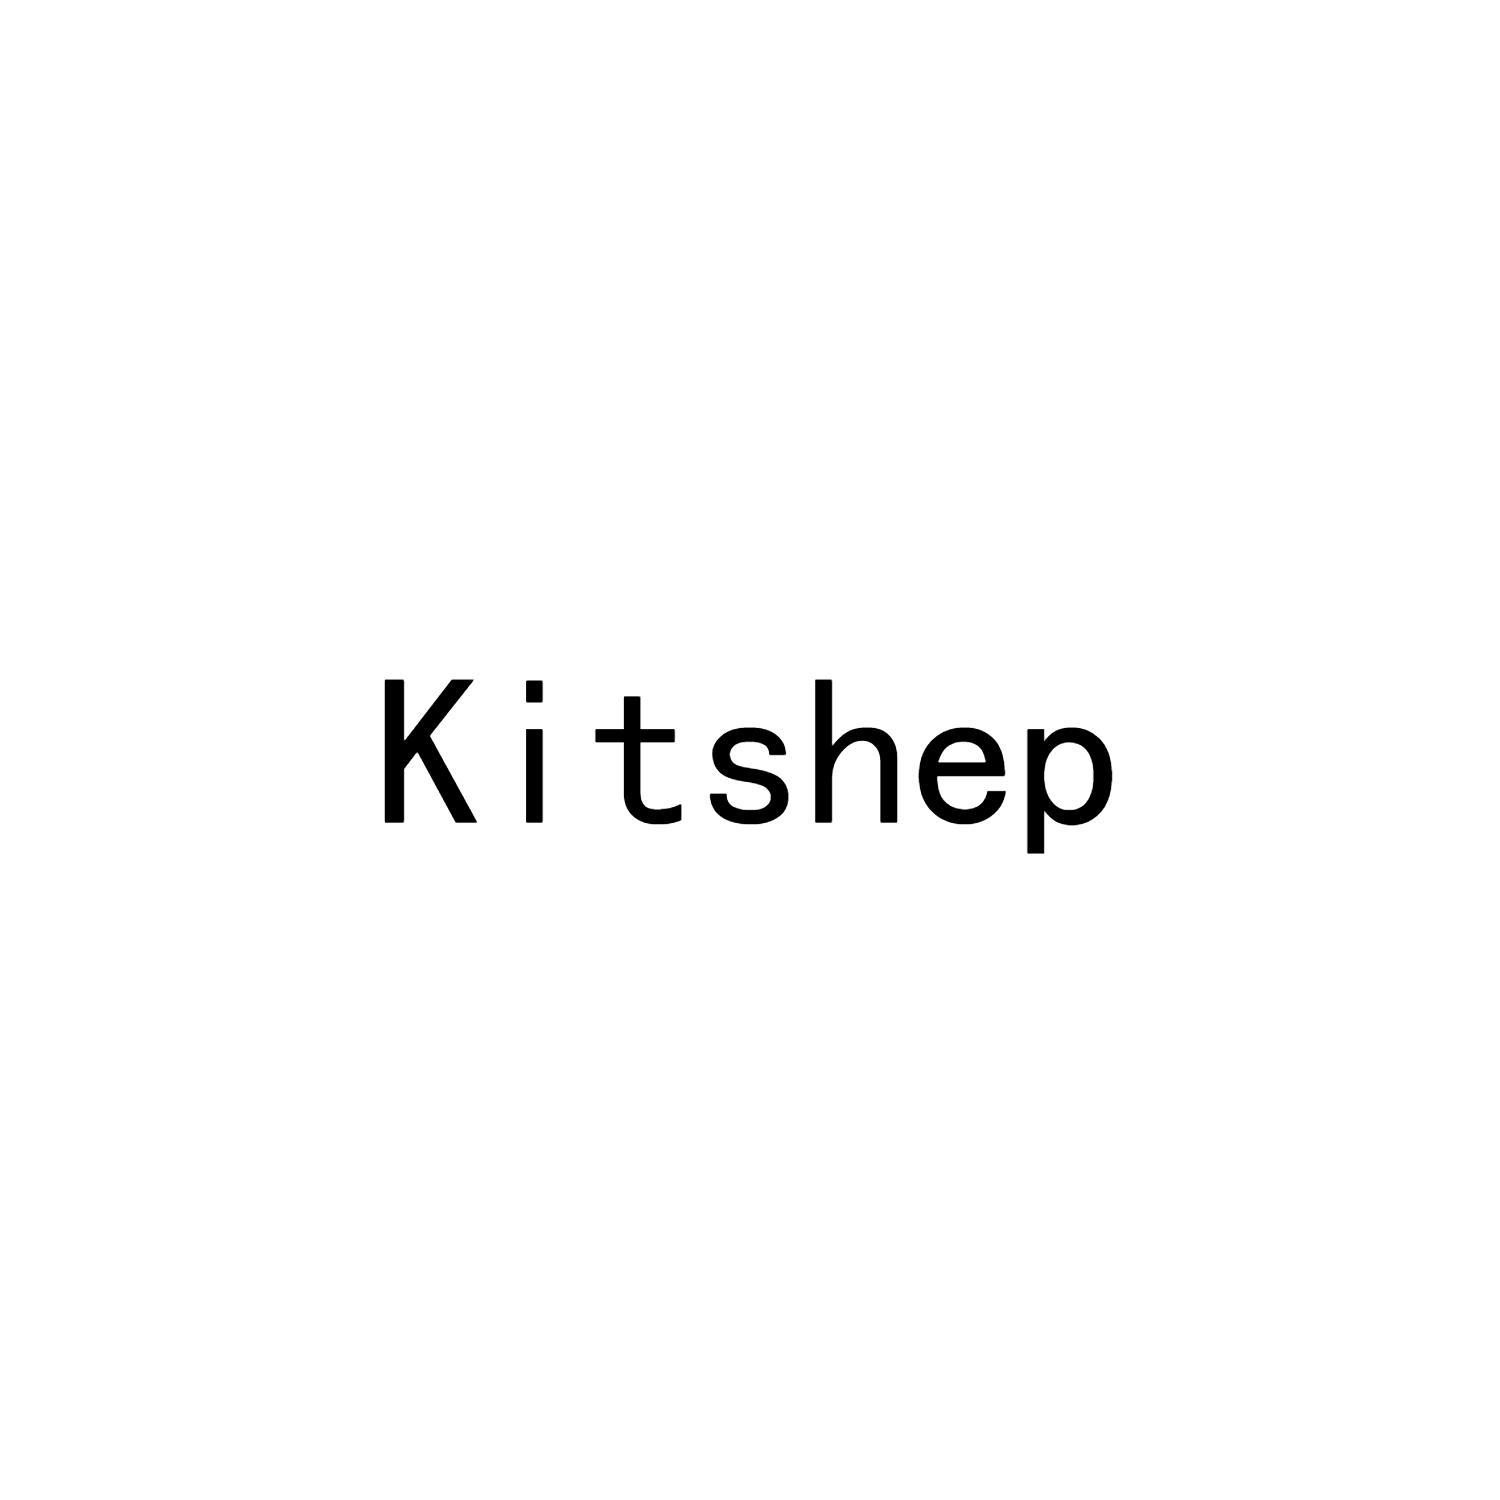 KITSHEP